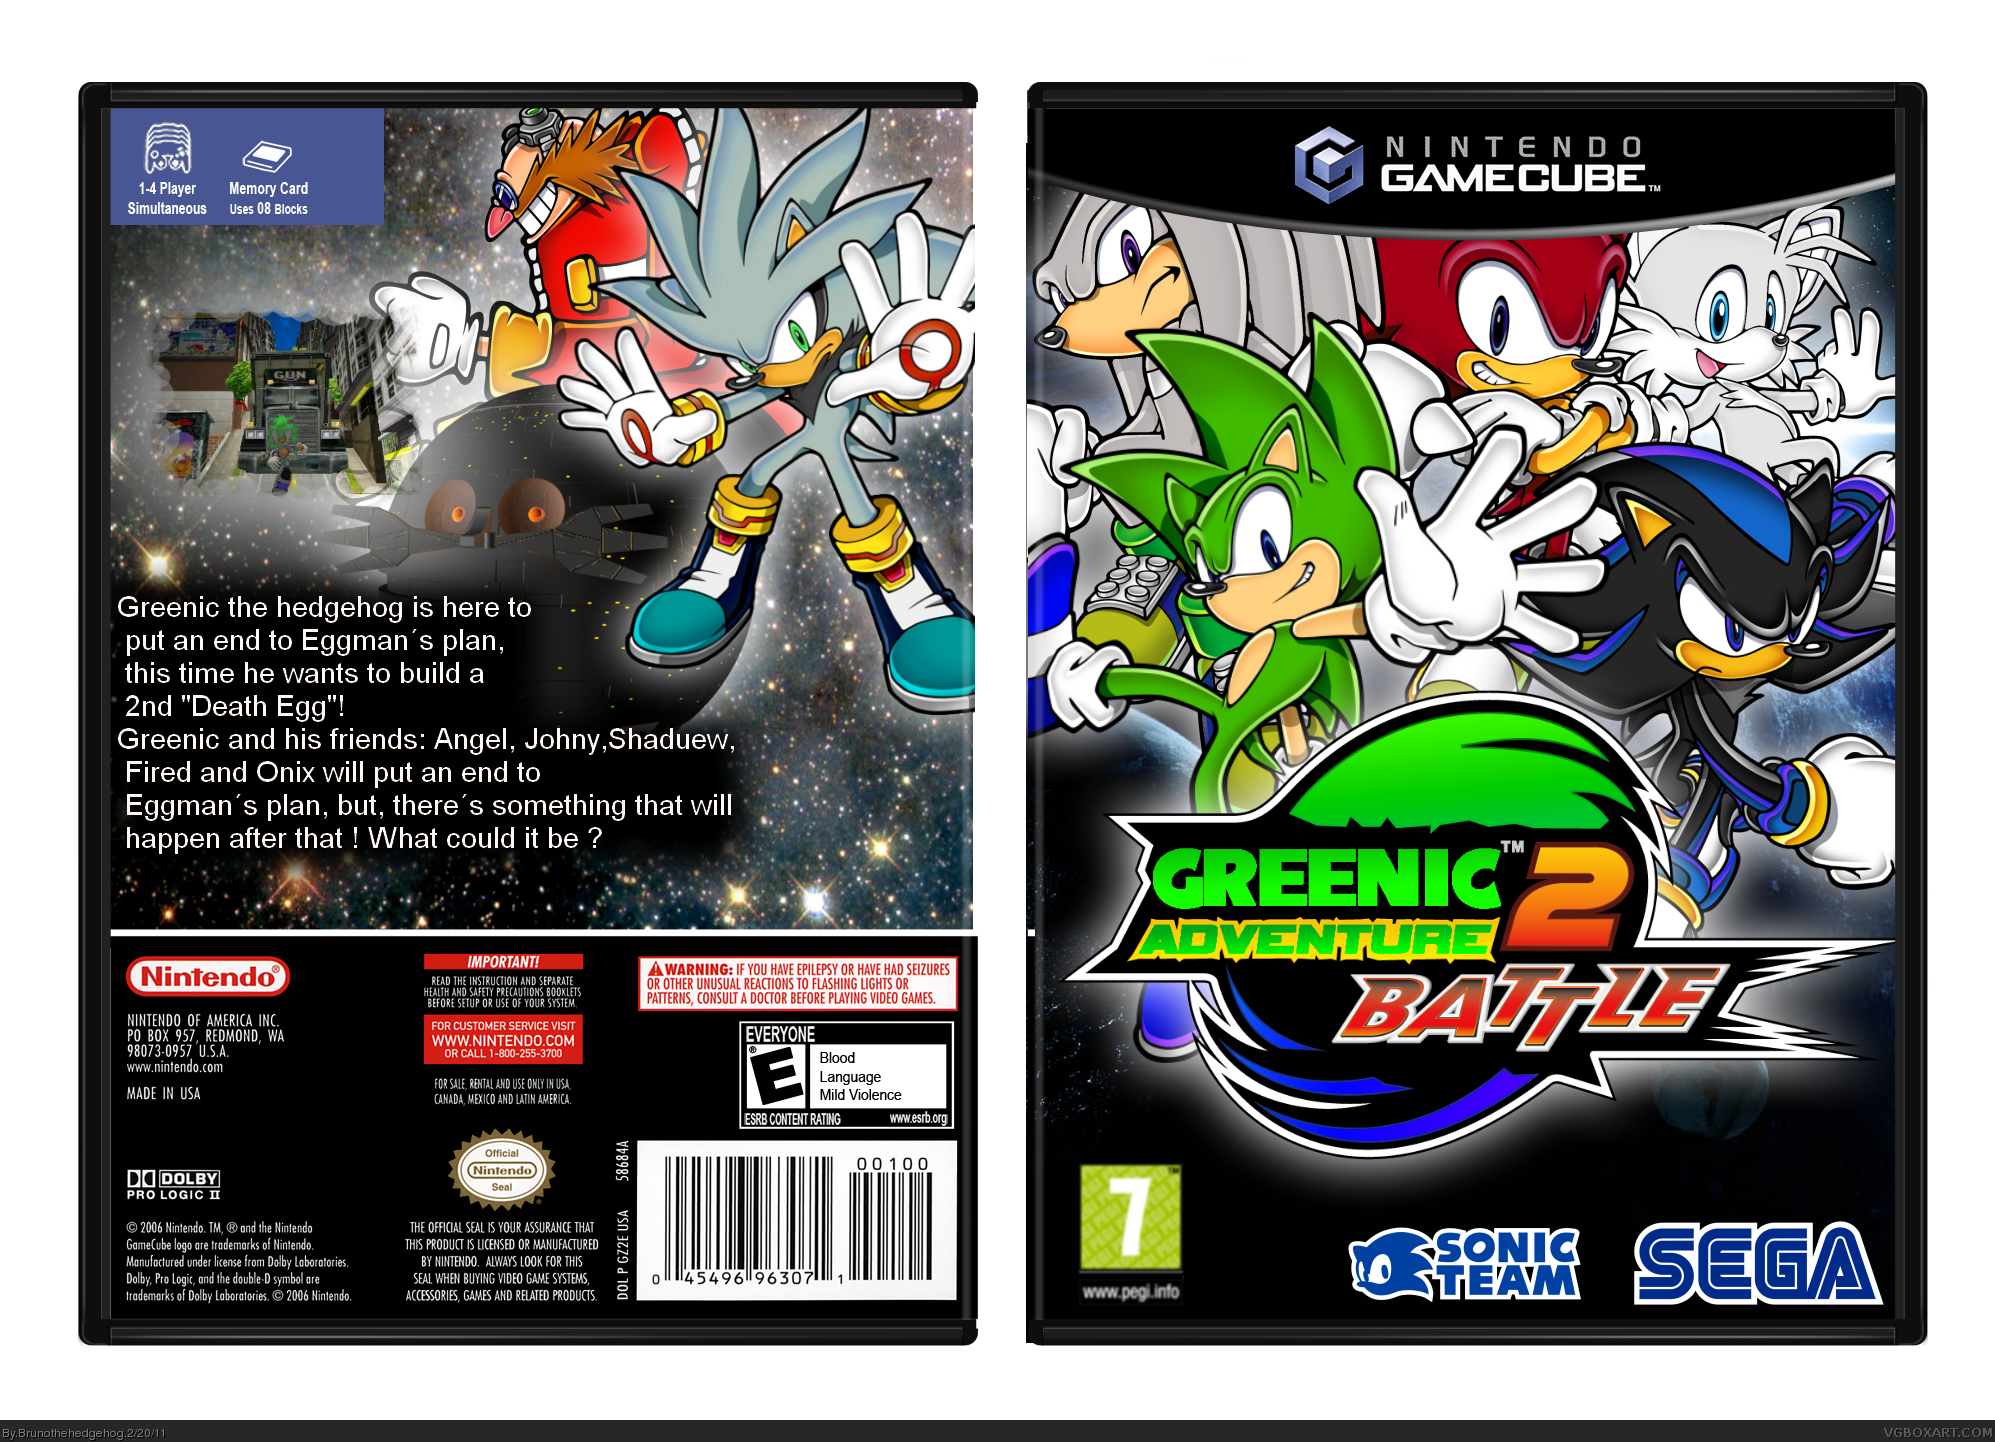 Greenic Adventure 2 Battle box cover